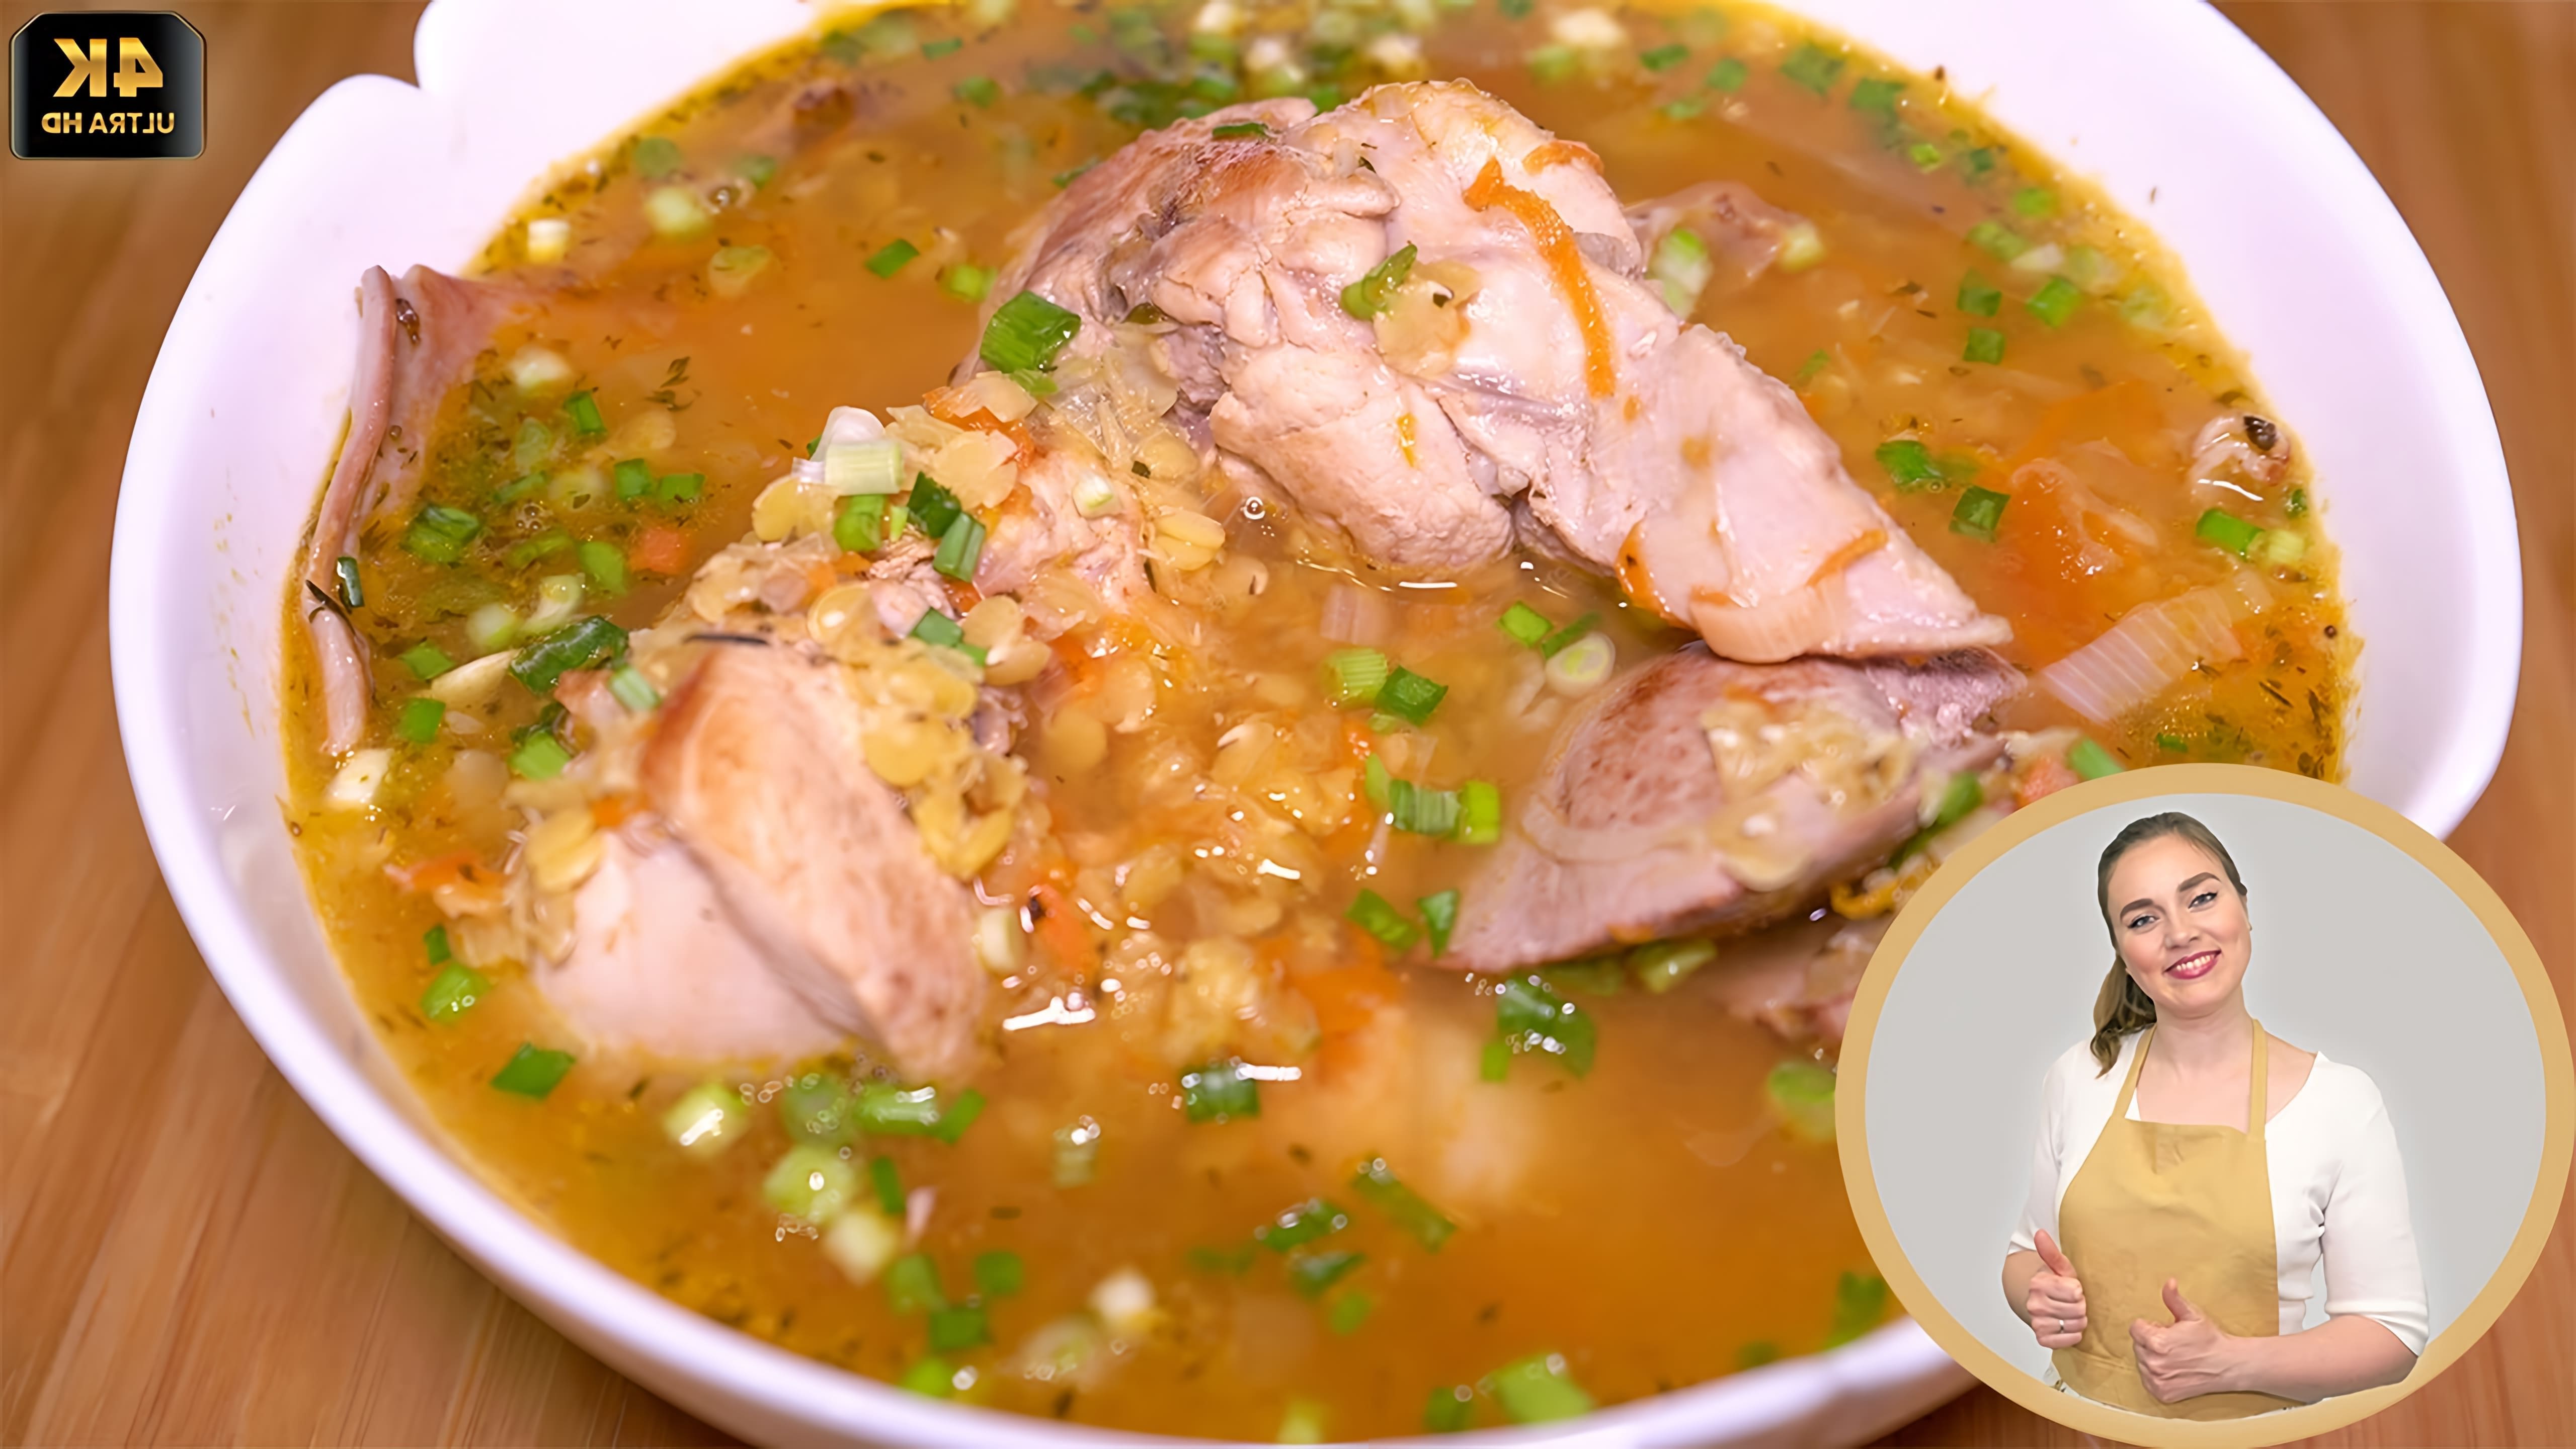 В этом видео демонстрируется процесс приготовления вкусного и полезного супа из кролика